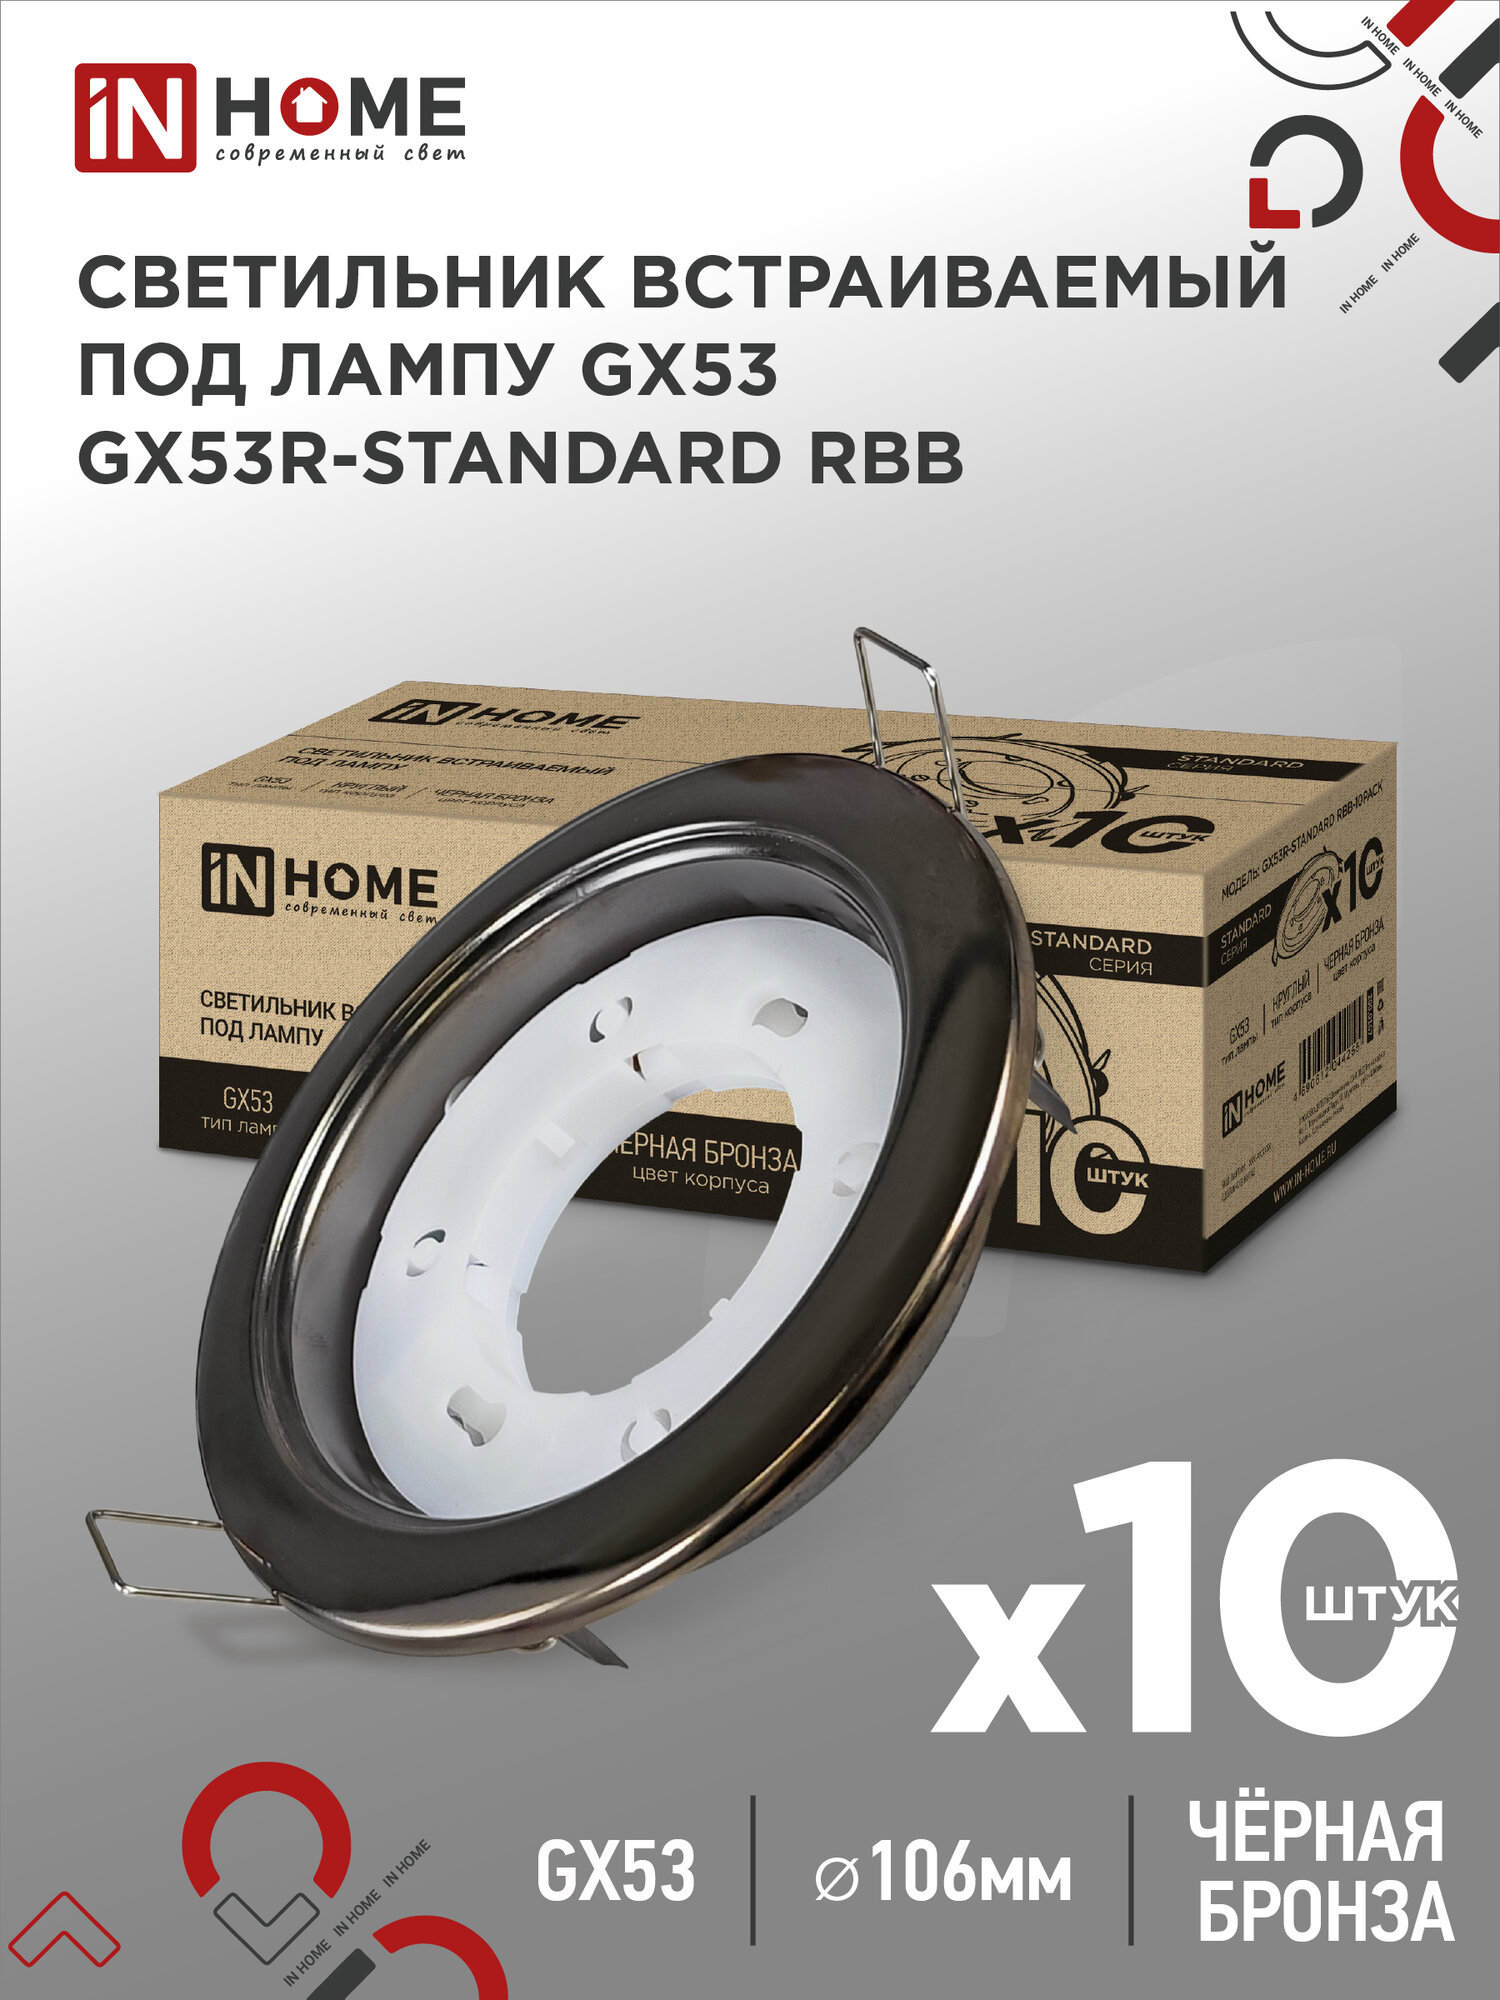 Упаковка 10 штук светильников встраиваемых точечных GX53R-standard RBB под GX53 черная бронза IN HOME